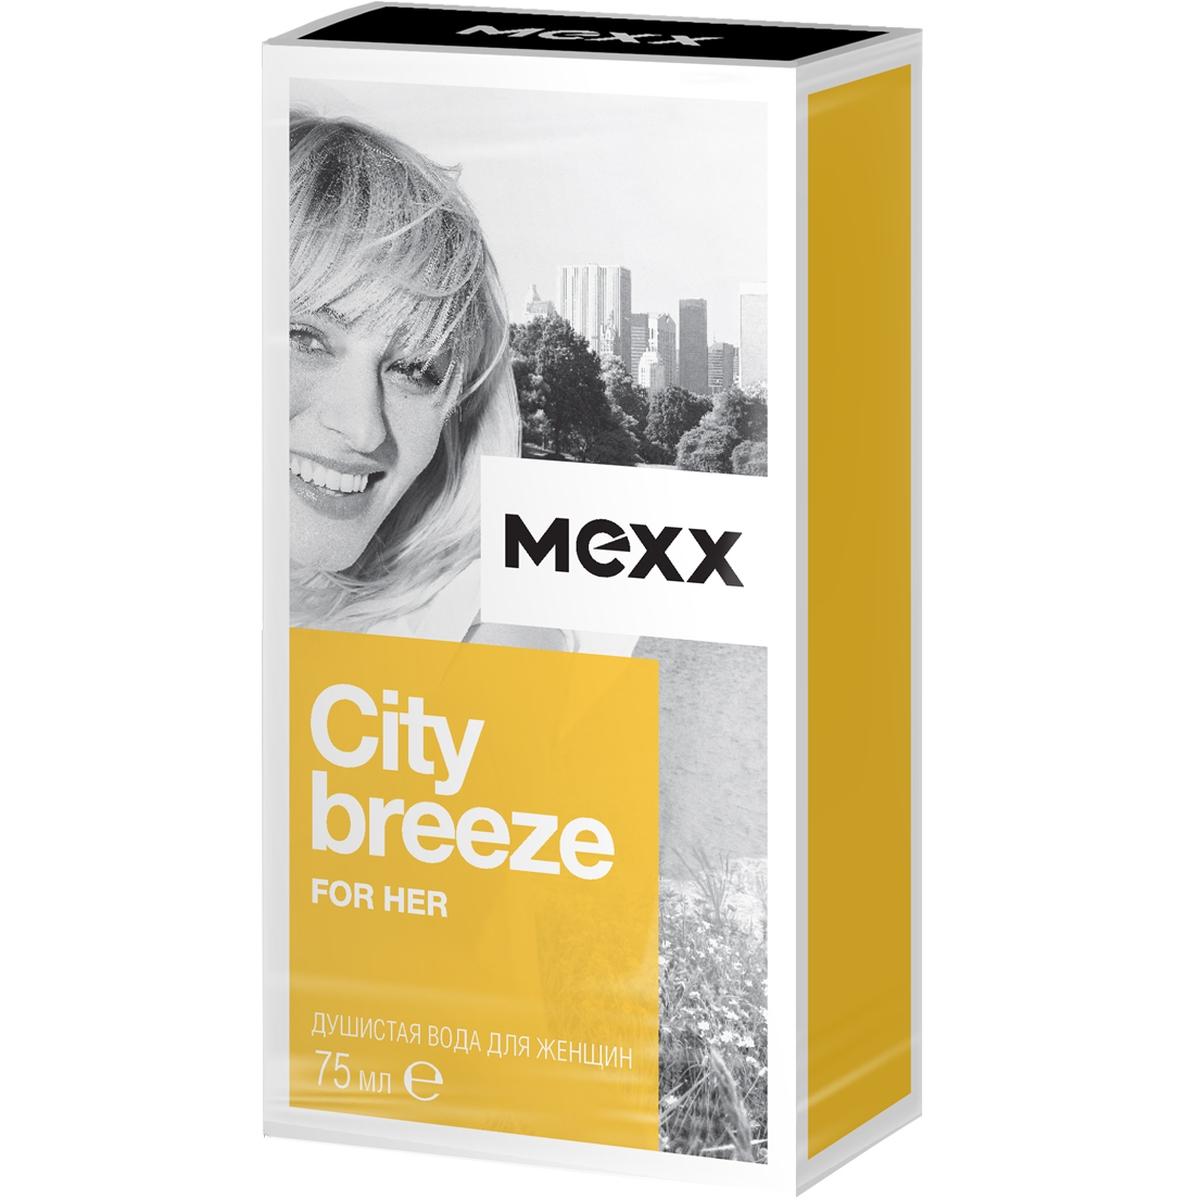 Душистая вода MEXX CITY BREEZE FOR HER 75 мл mexx city breeze